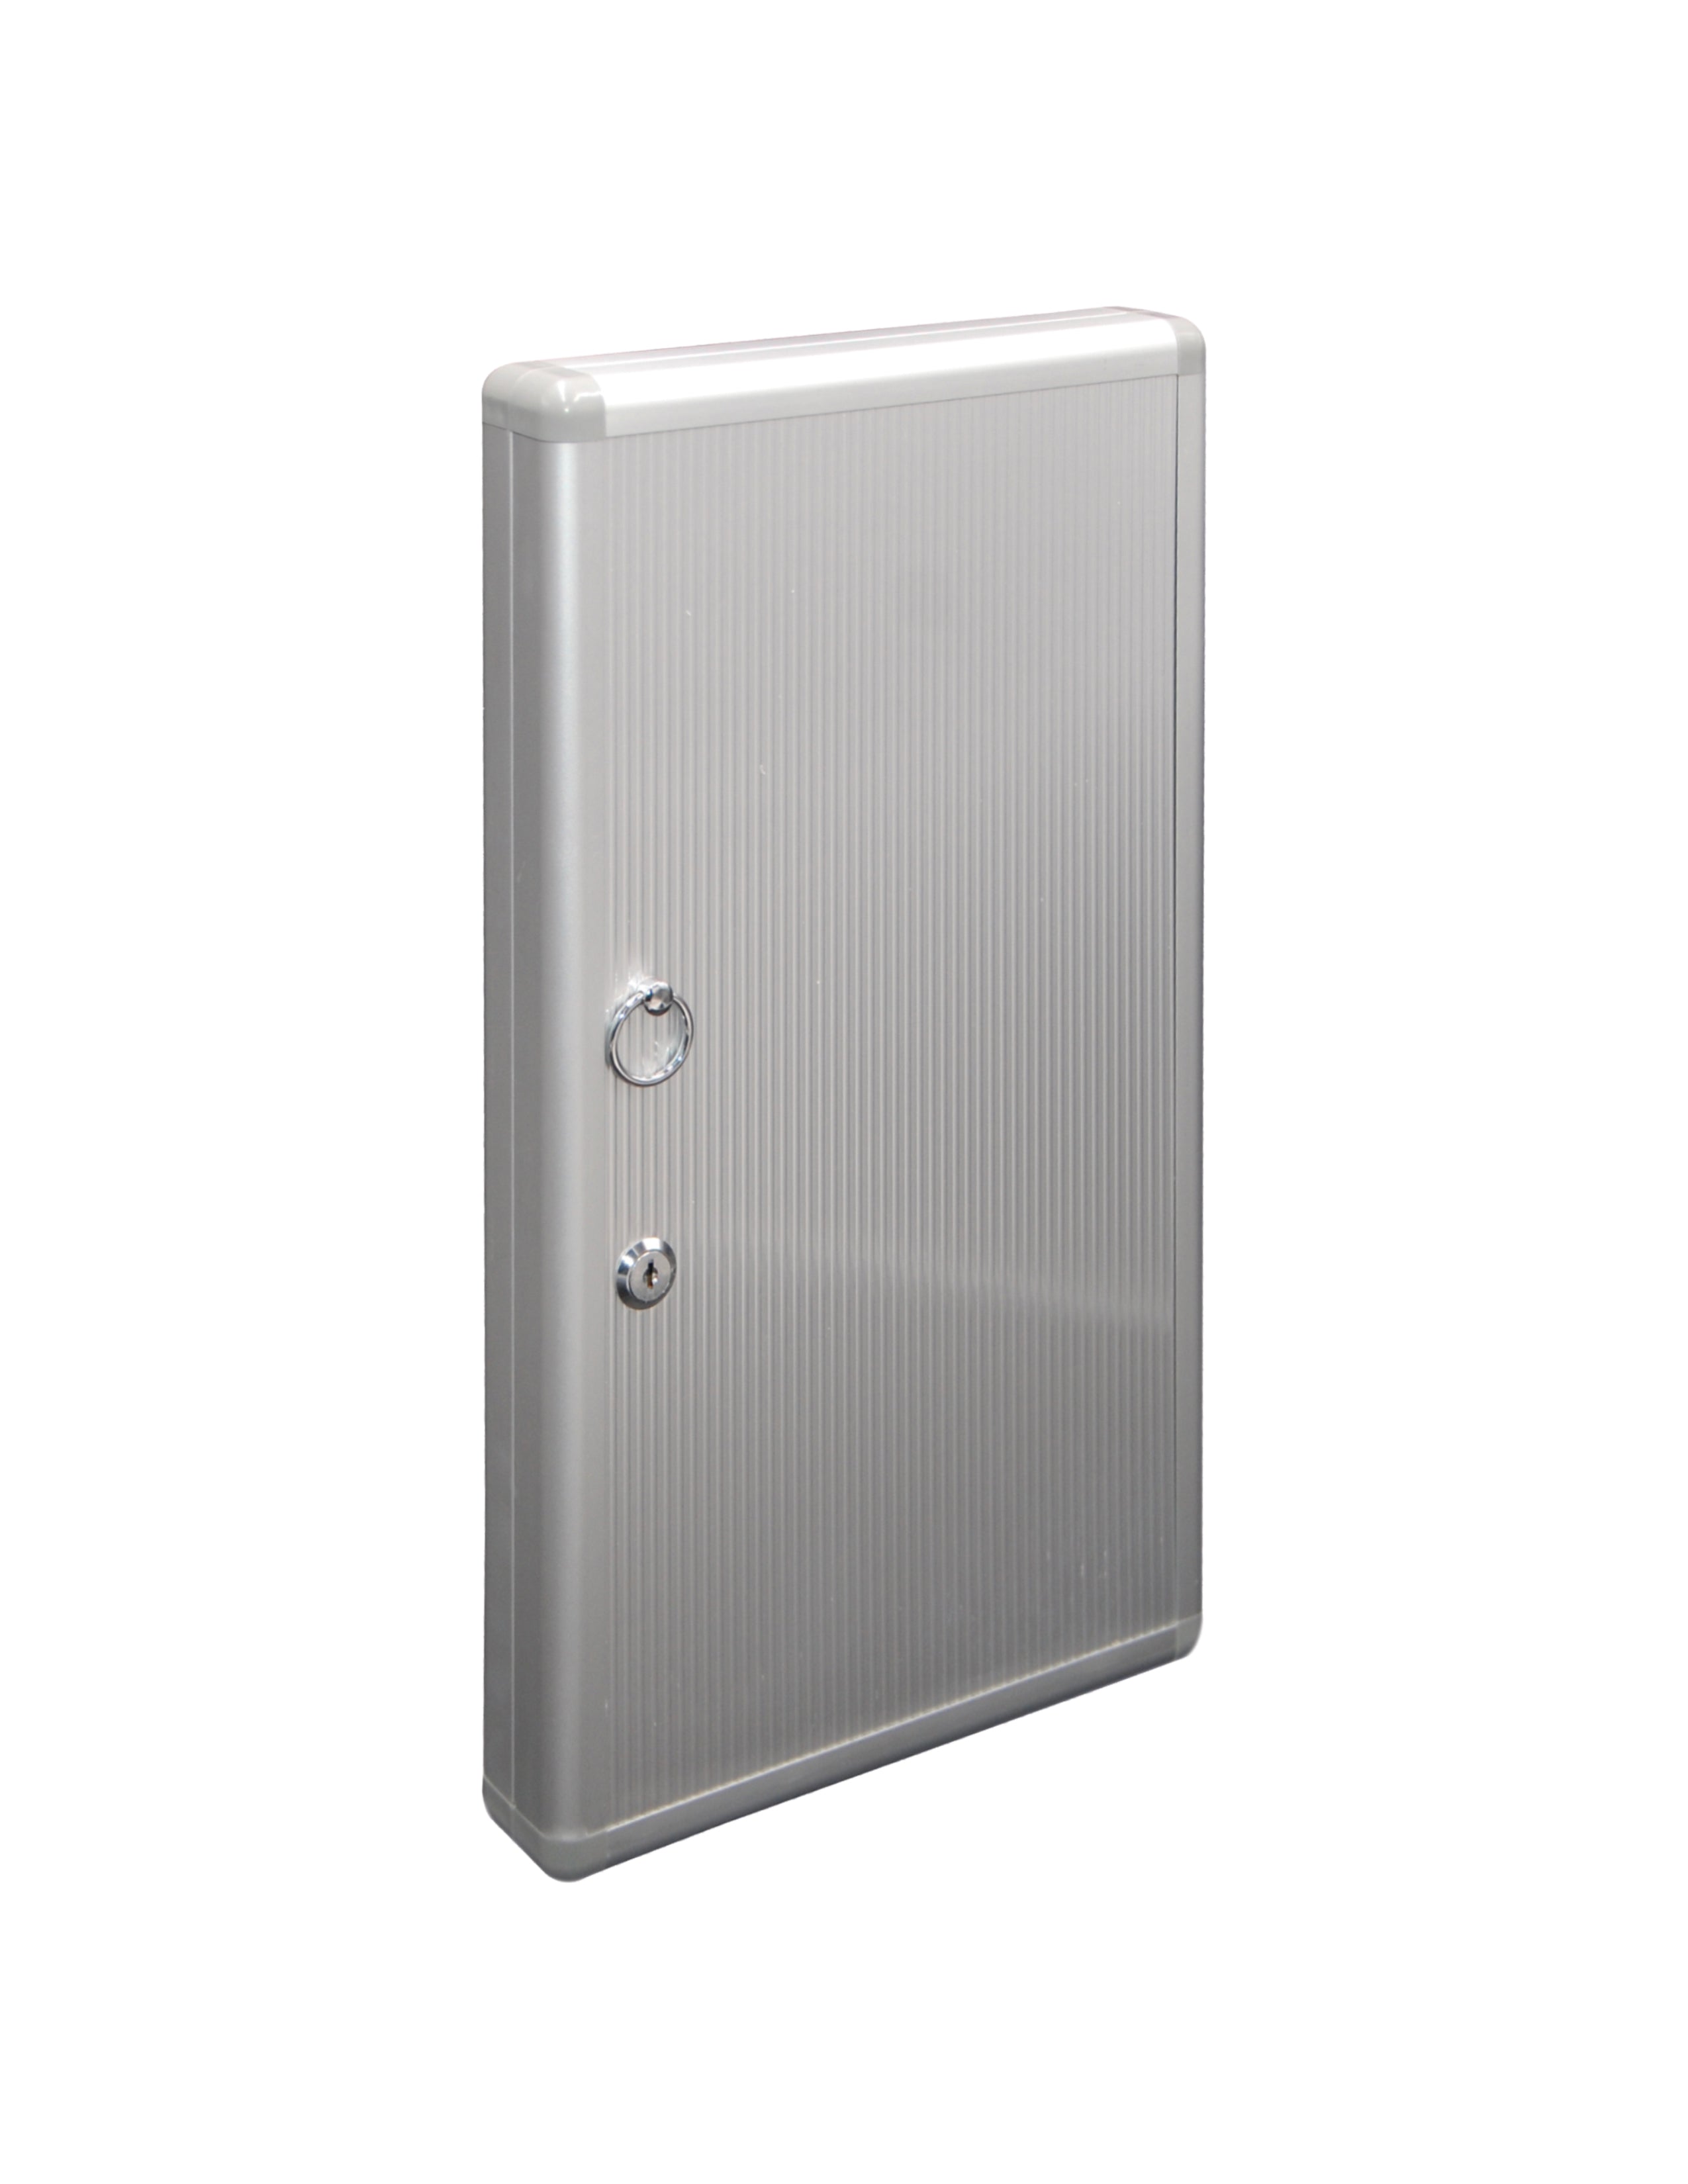 KMCS-48/ Aluminum Key Cabinets - Hook Style